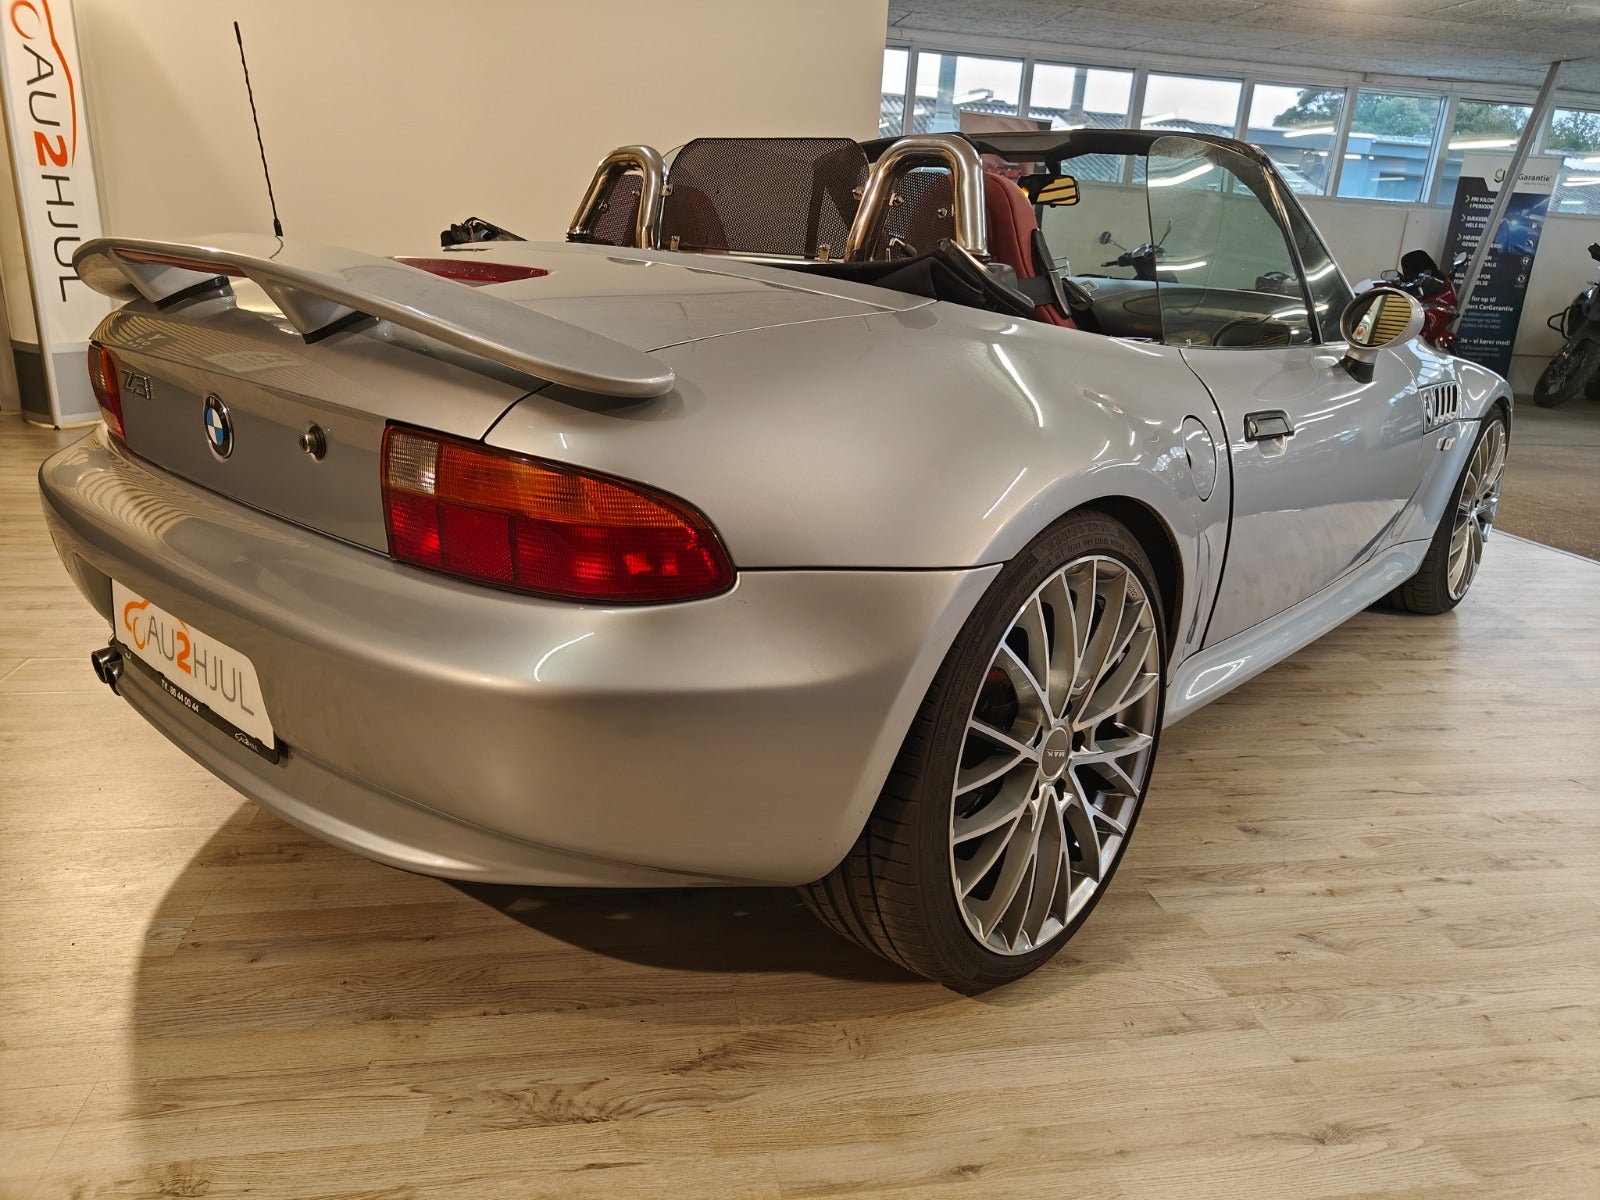 BMW Z3 1997